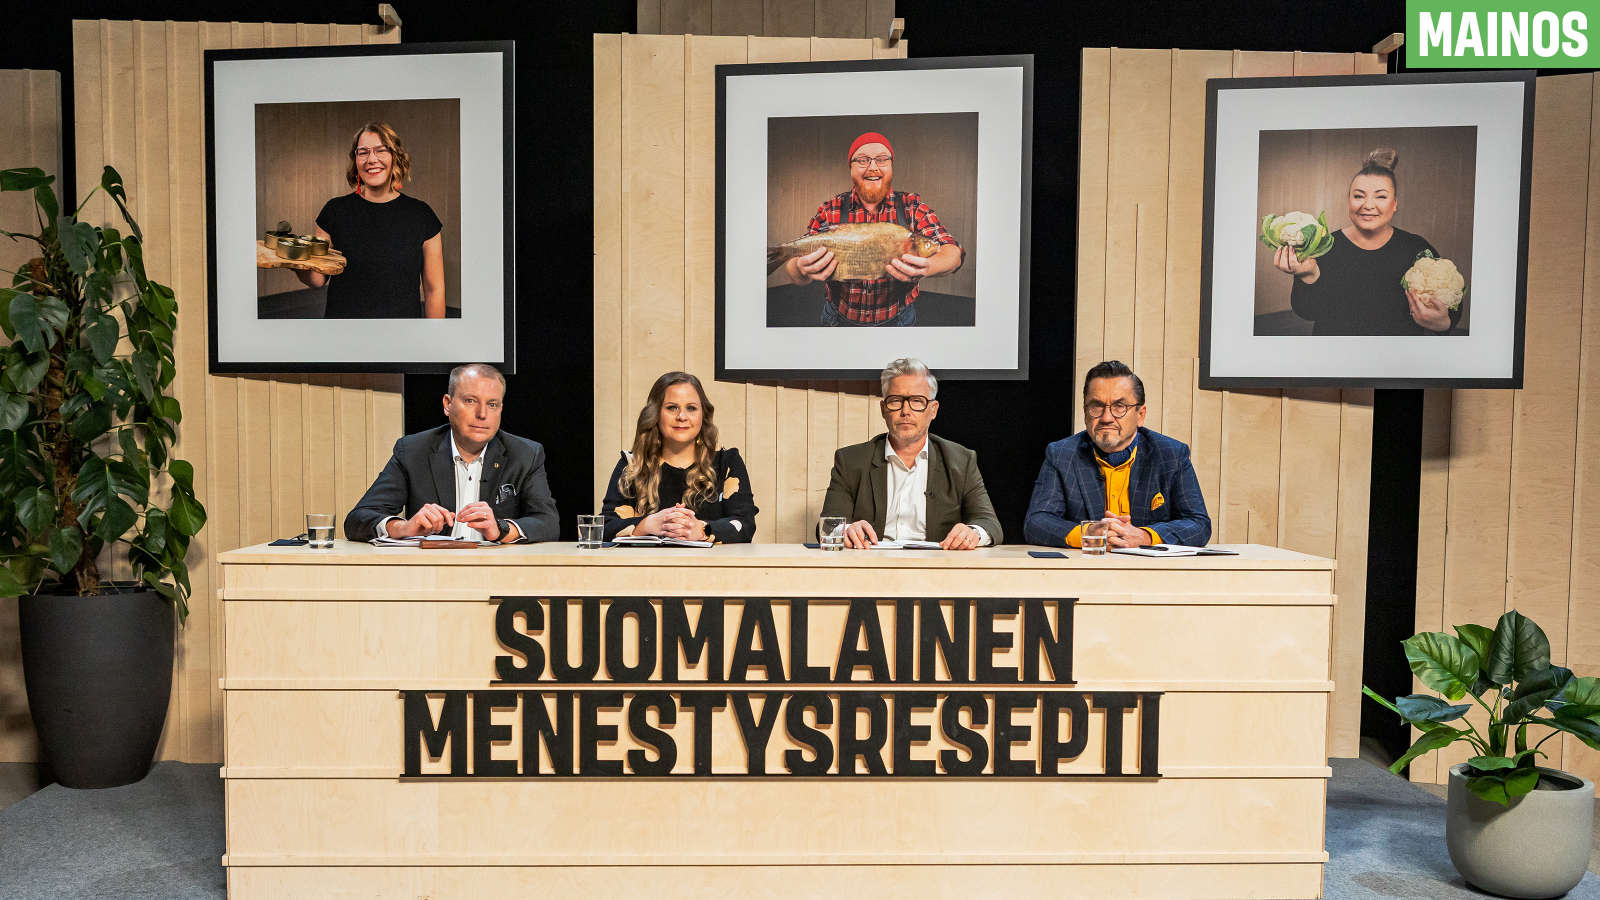 Tuomariston jäsenet Sampo Päällysaho, Suvi Luoma, Jyrki Sukula ja Jukka Kurttila valitsevat Suomalainen Menestysresepti -sarjan finaalissa voittajan.